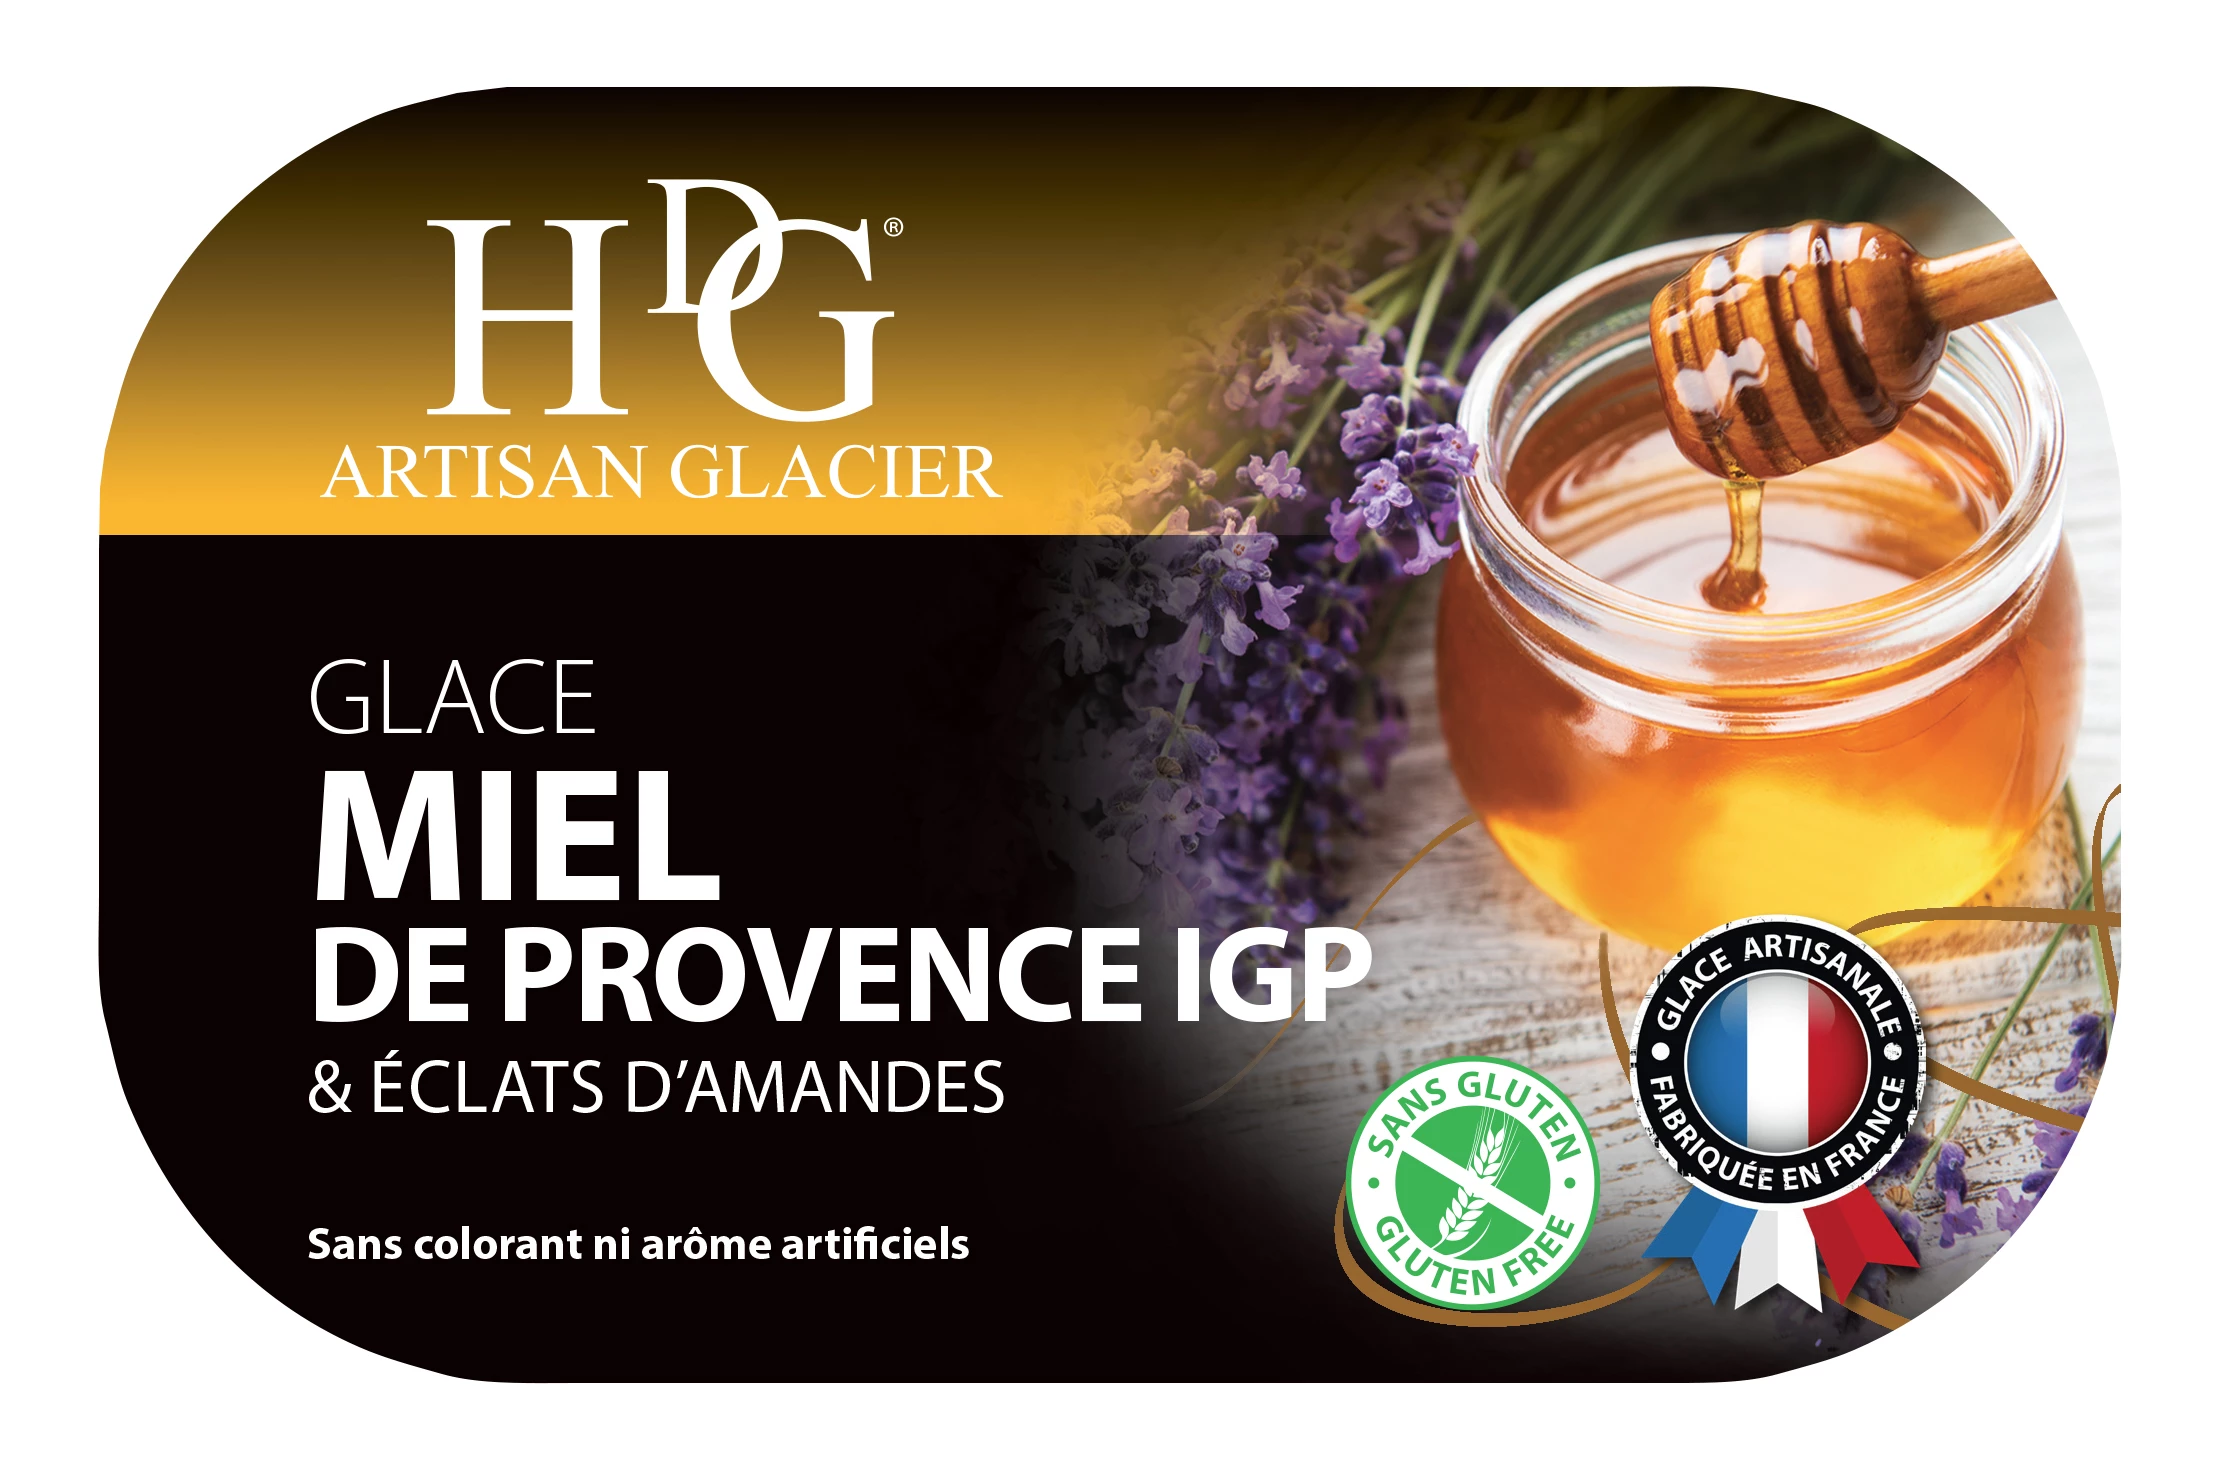 普罗旺斯蜂蜜冰淇淋 Igp 487.5g - Histoires De Glaces